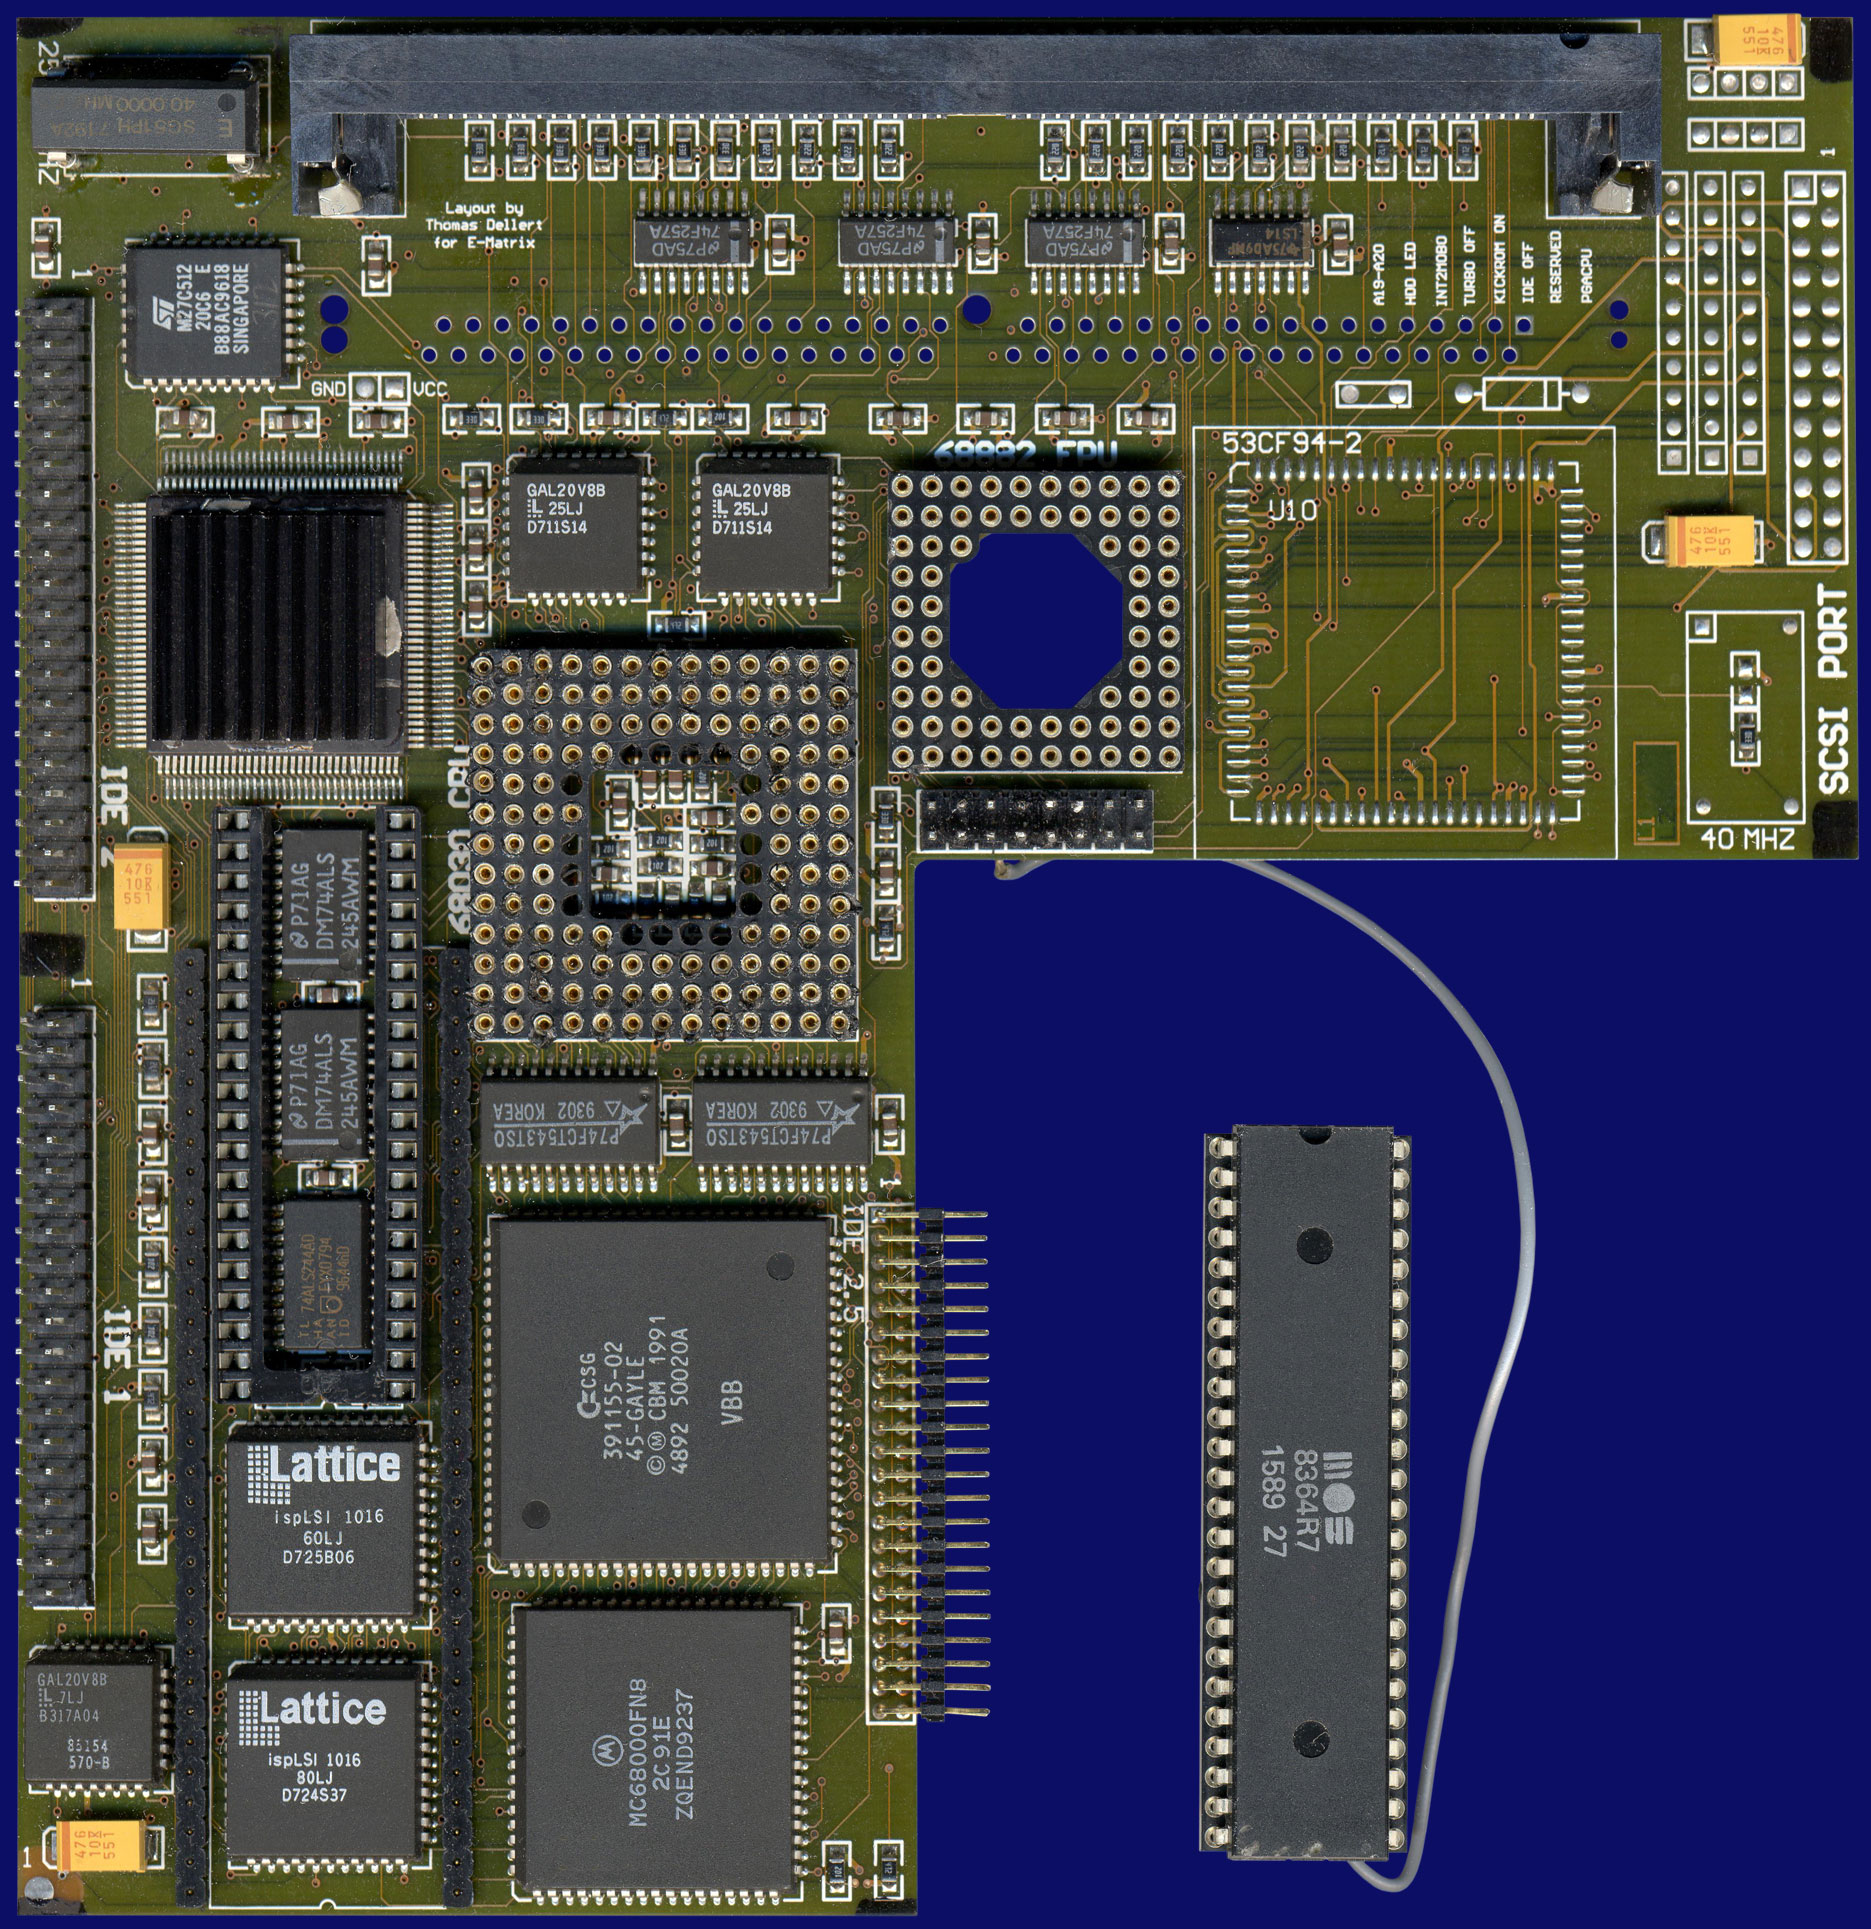 M-Tec E-Matrix 530 (Viper 530) - Version without SCSI, front side